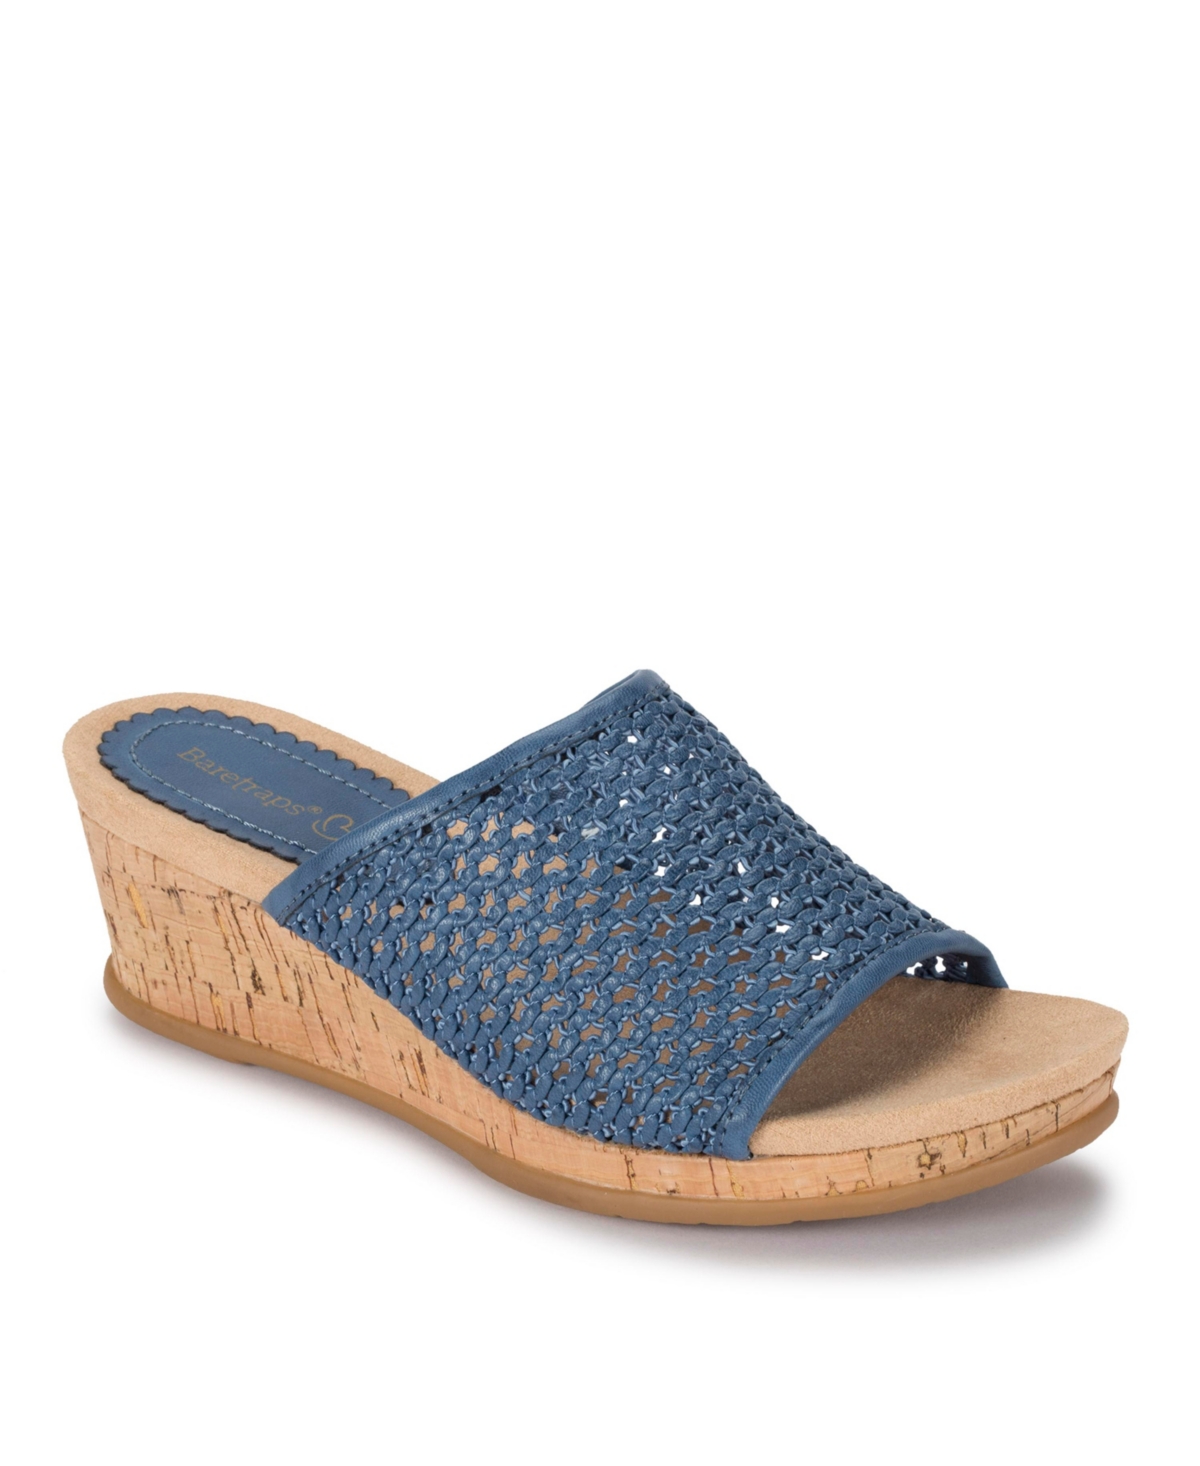 Baretraps Flossey Platform Slide Wedge Sandals Women's Shoes In Ocean ...